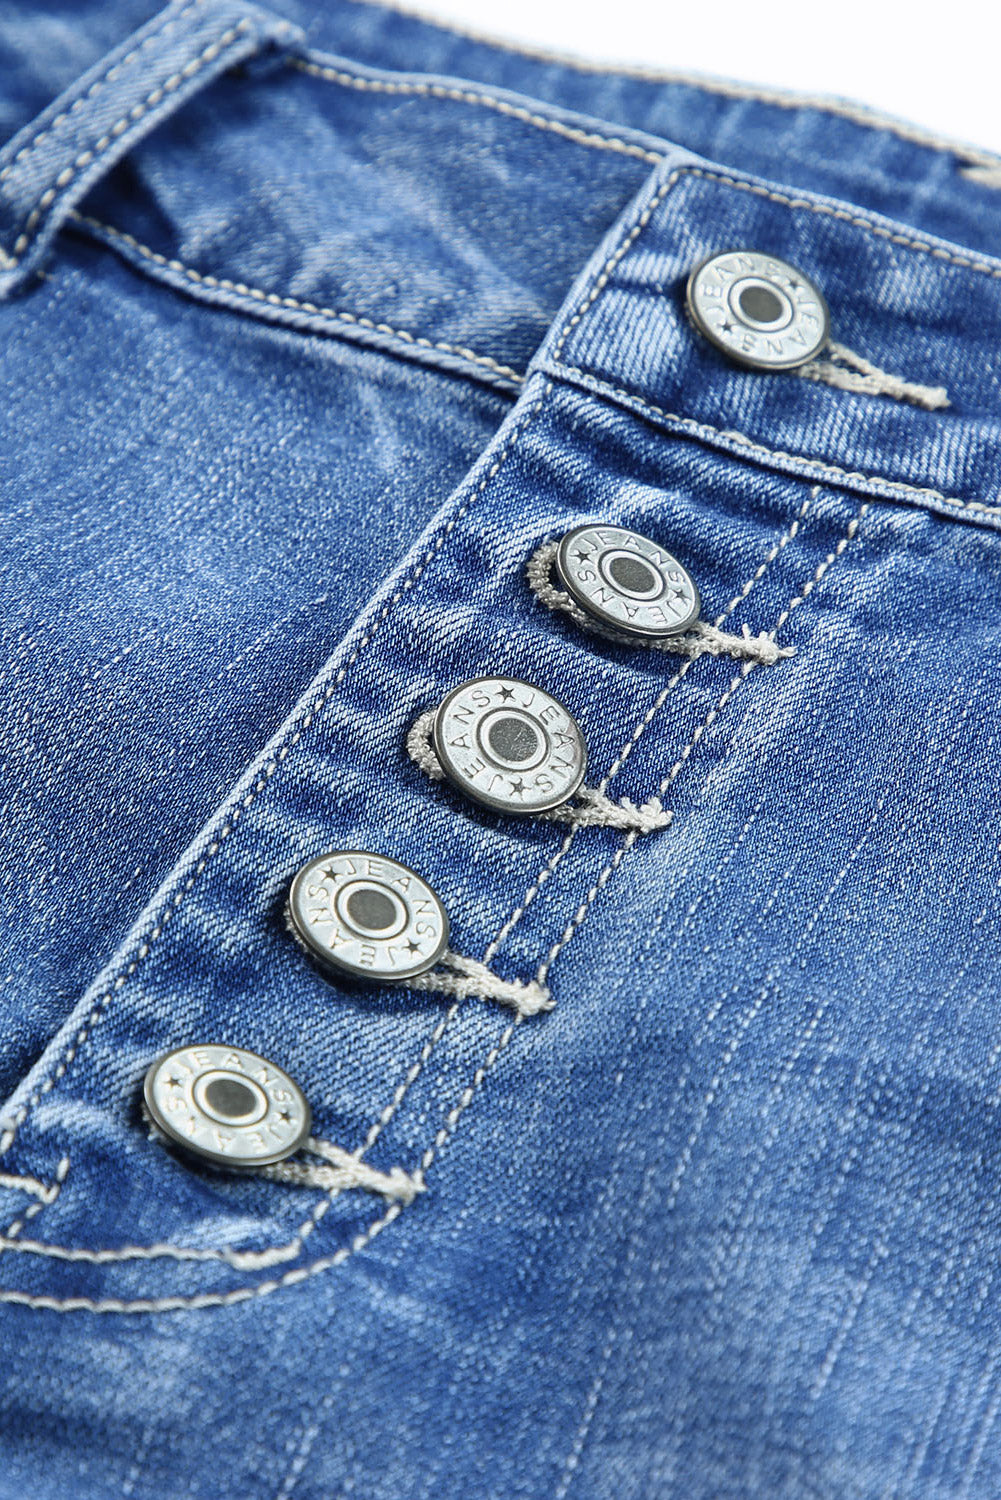 Pantalones cortos de mezclilla de talle alto con bragueta de botones quintuplicados y azul cielo